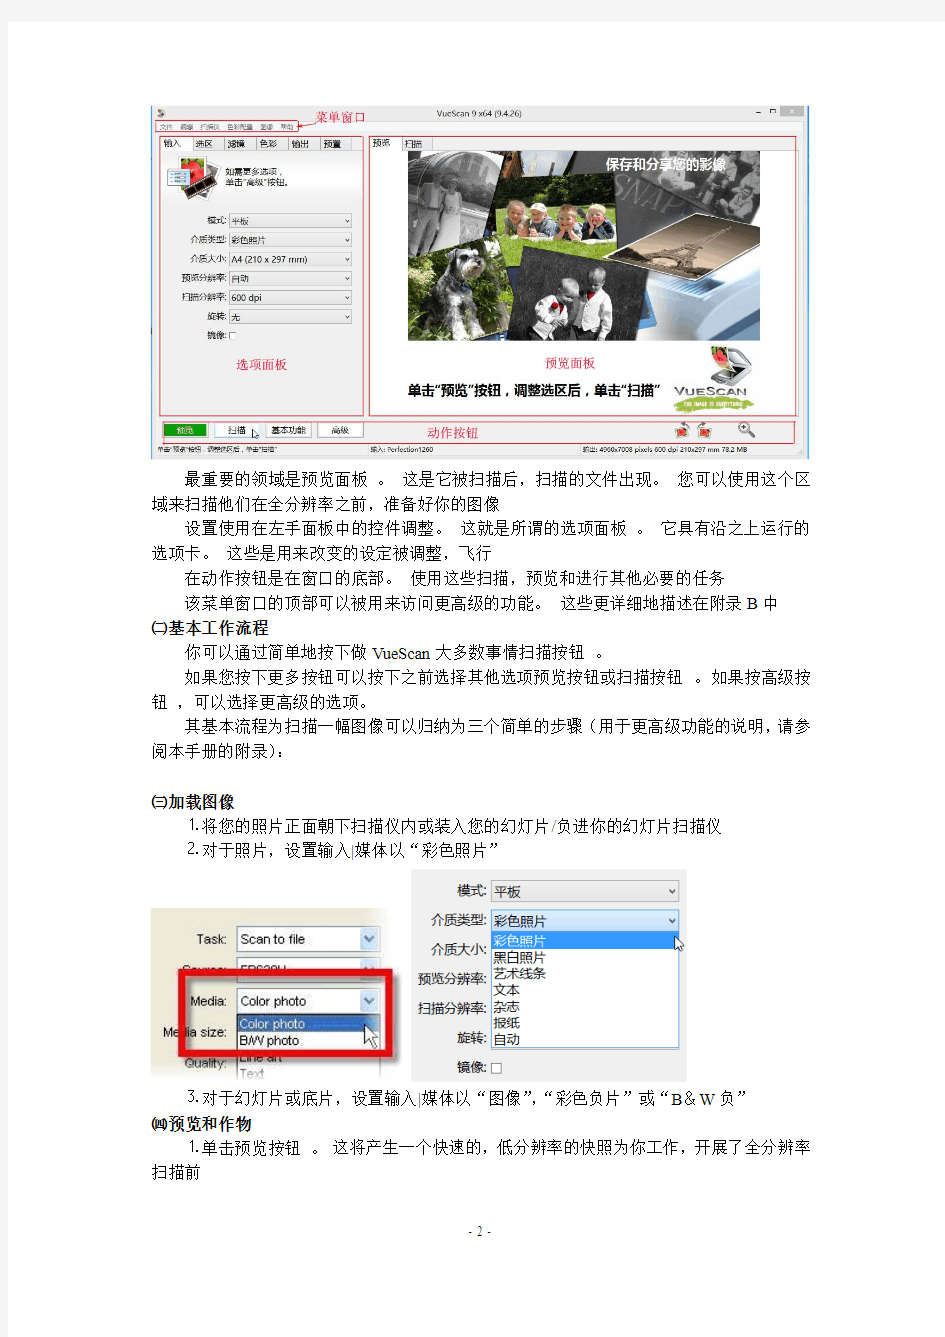 专业的相片扫描软件VueScan v9.4.26中文版用户指南分解